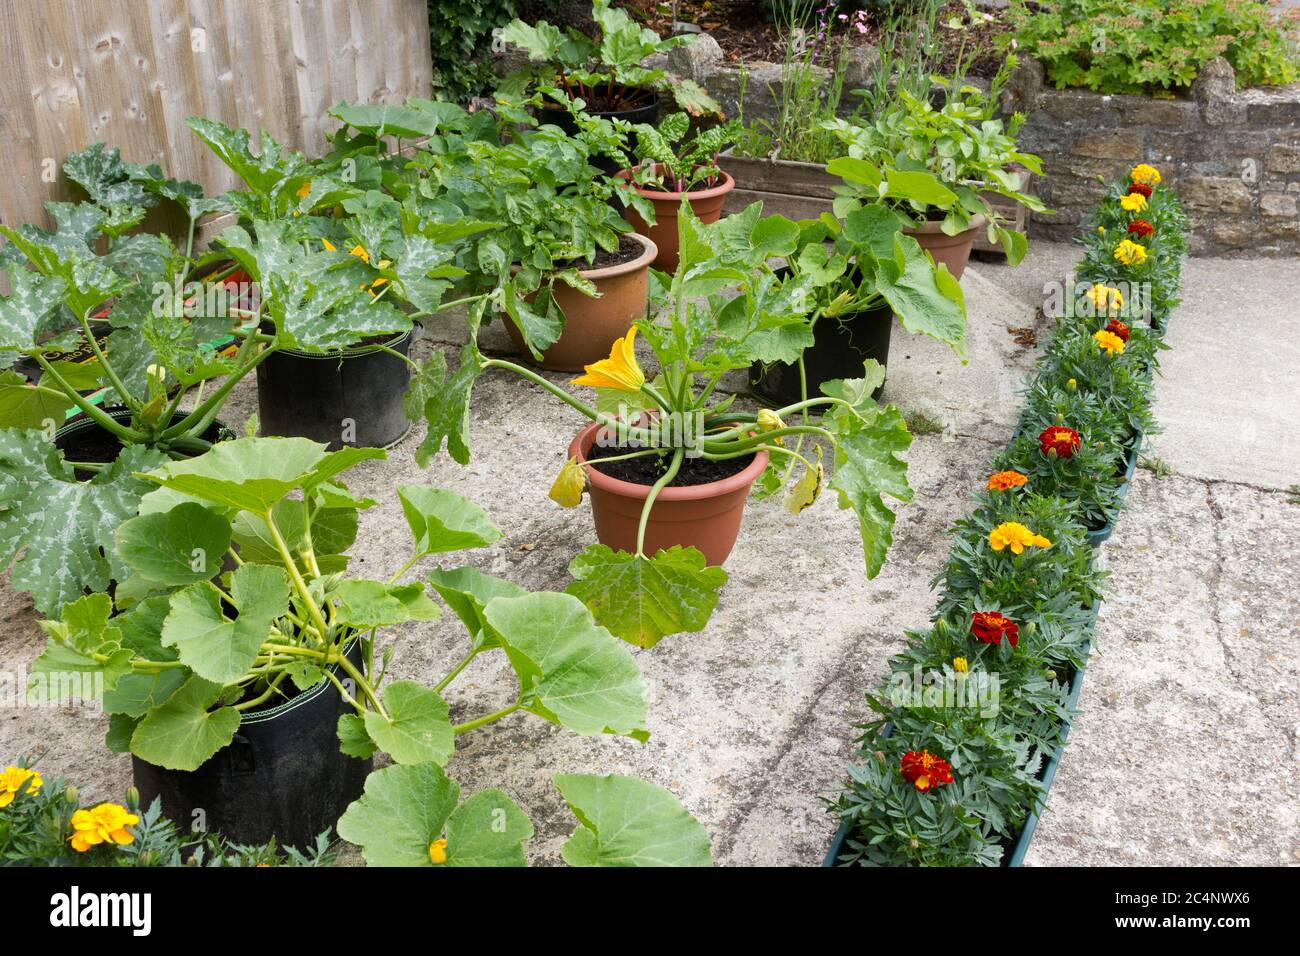 Giardinaggio vegetale biologico in pentole e contenitori Foto Stock